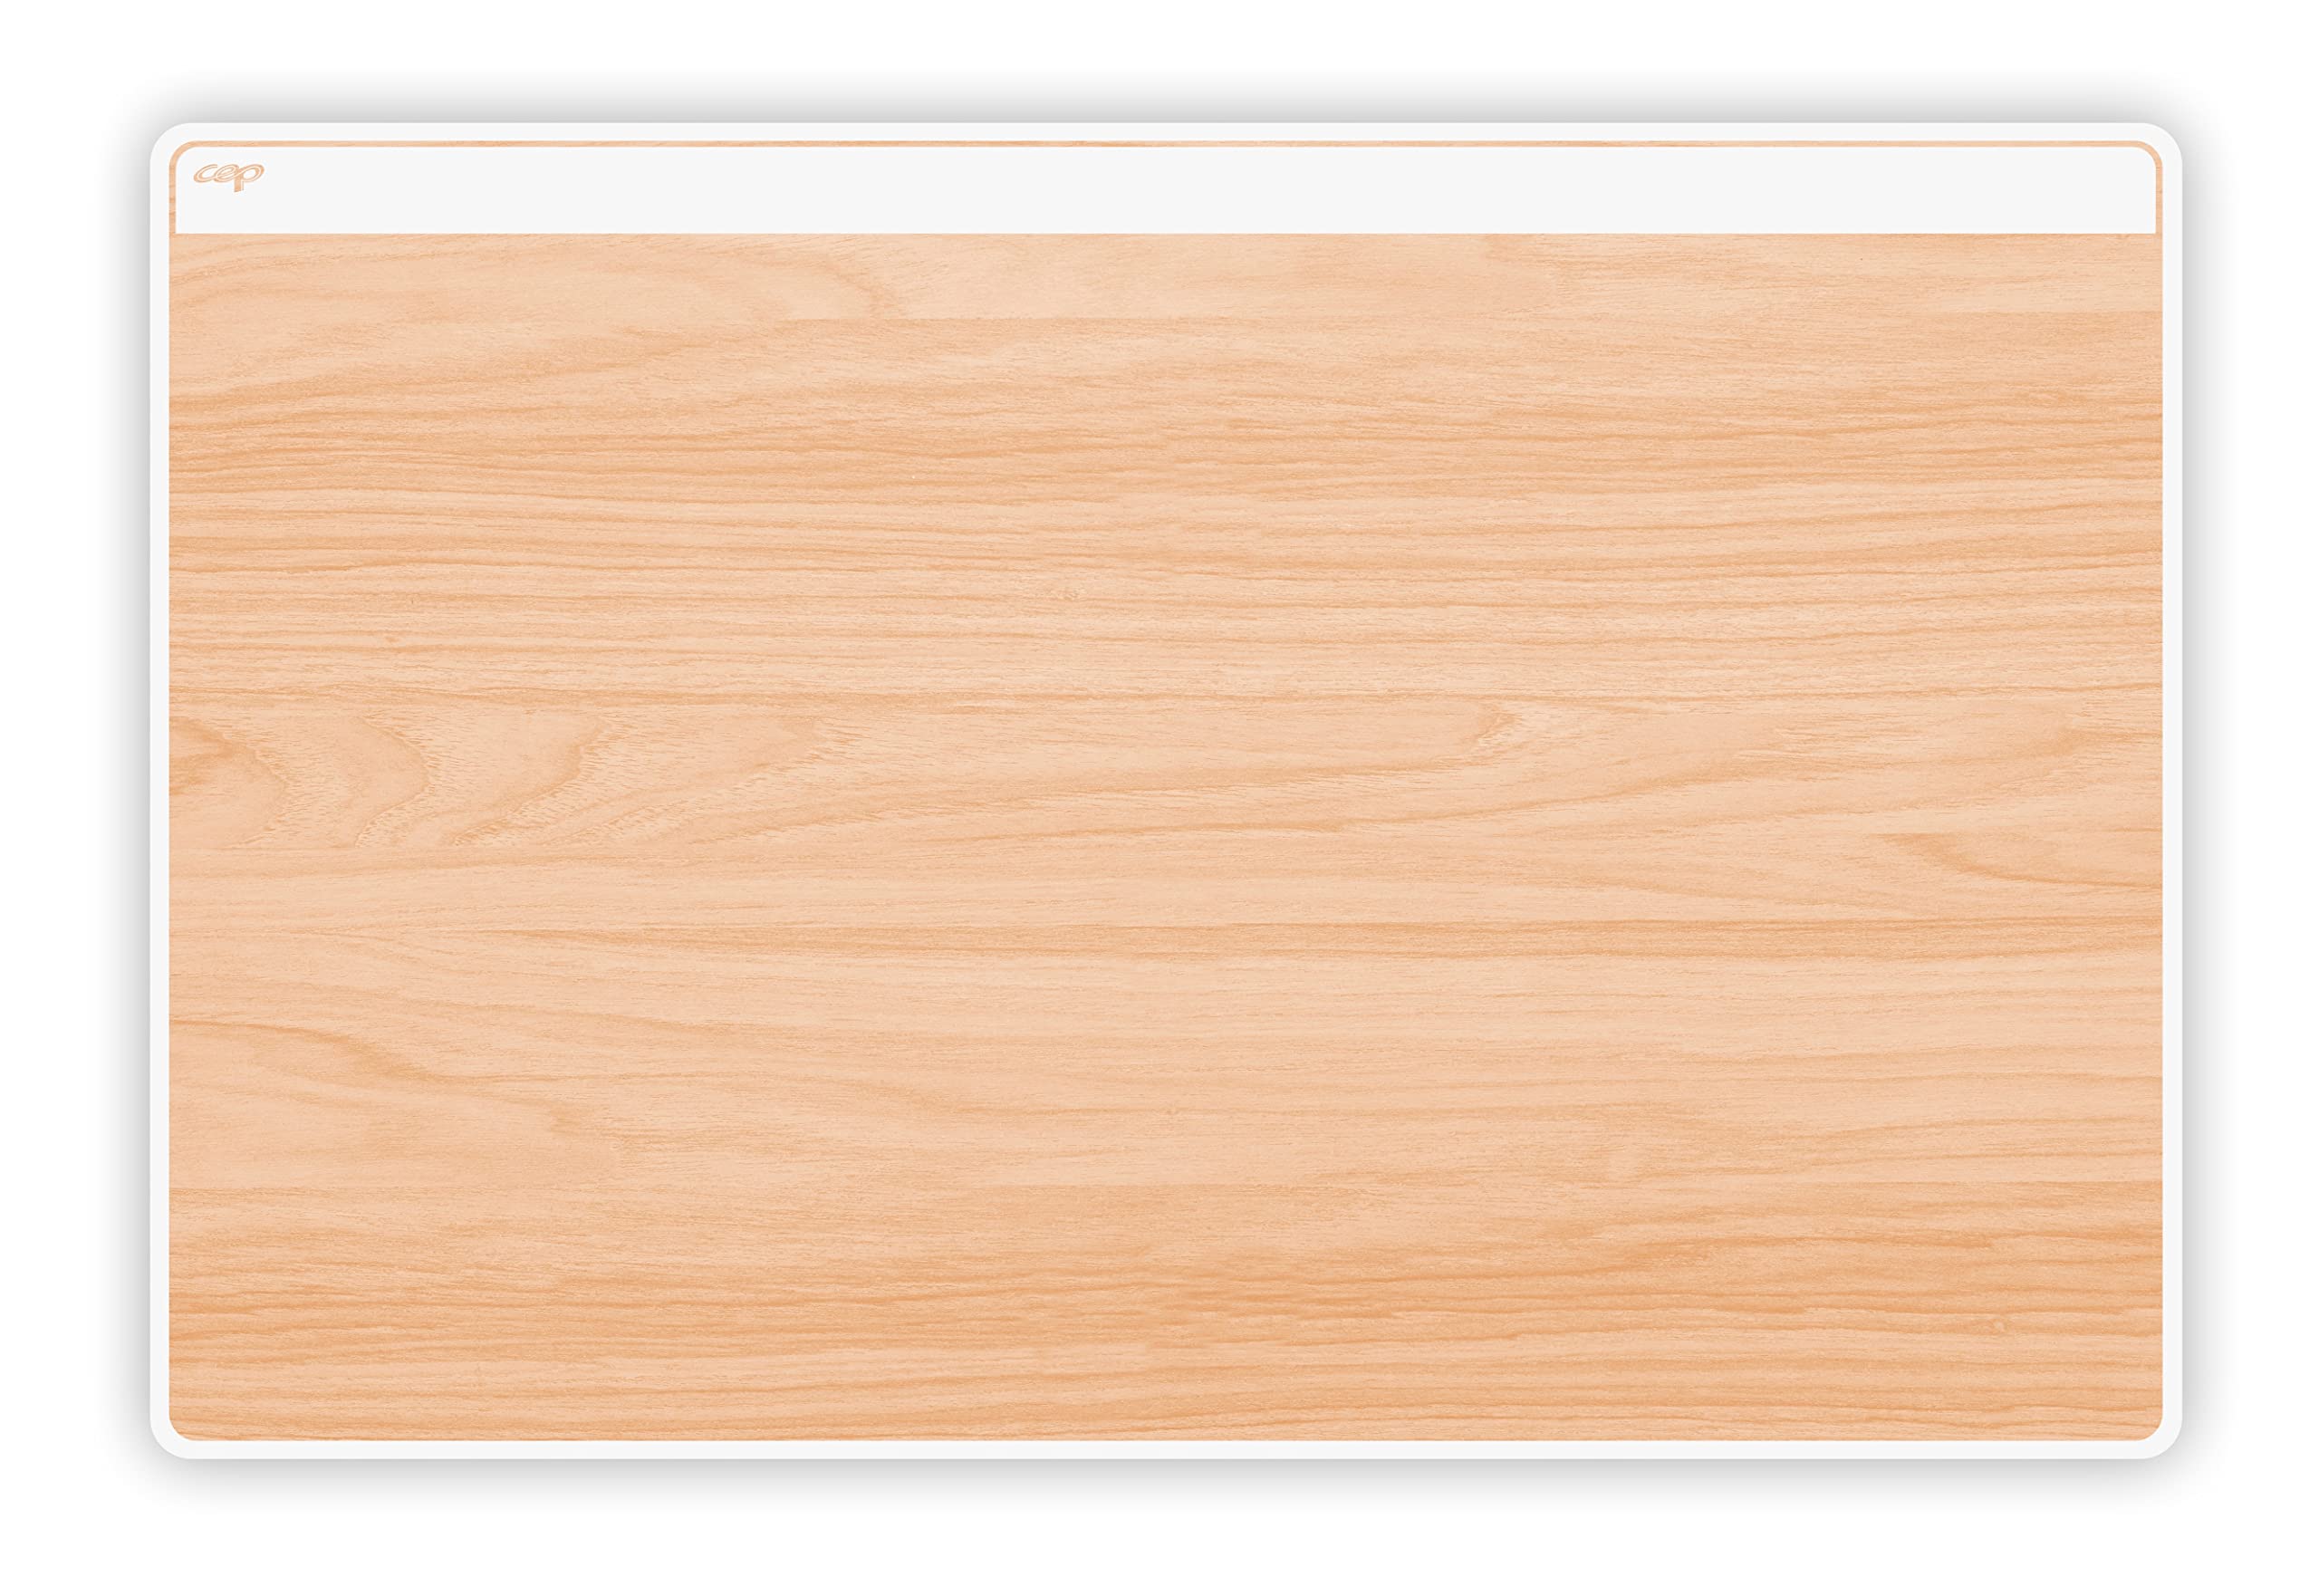 Sottomano Silva - pvc - con stampa legno - copertura trasparente - antiriflesso - Cep